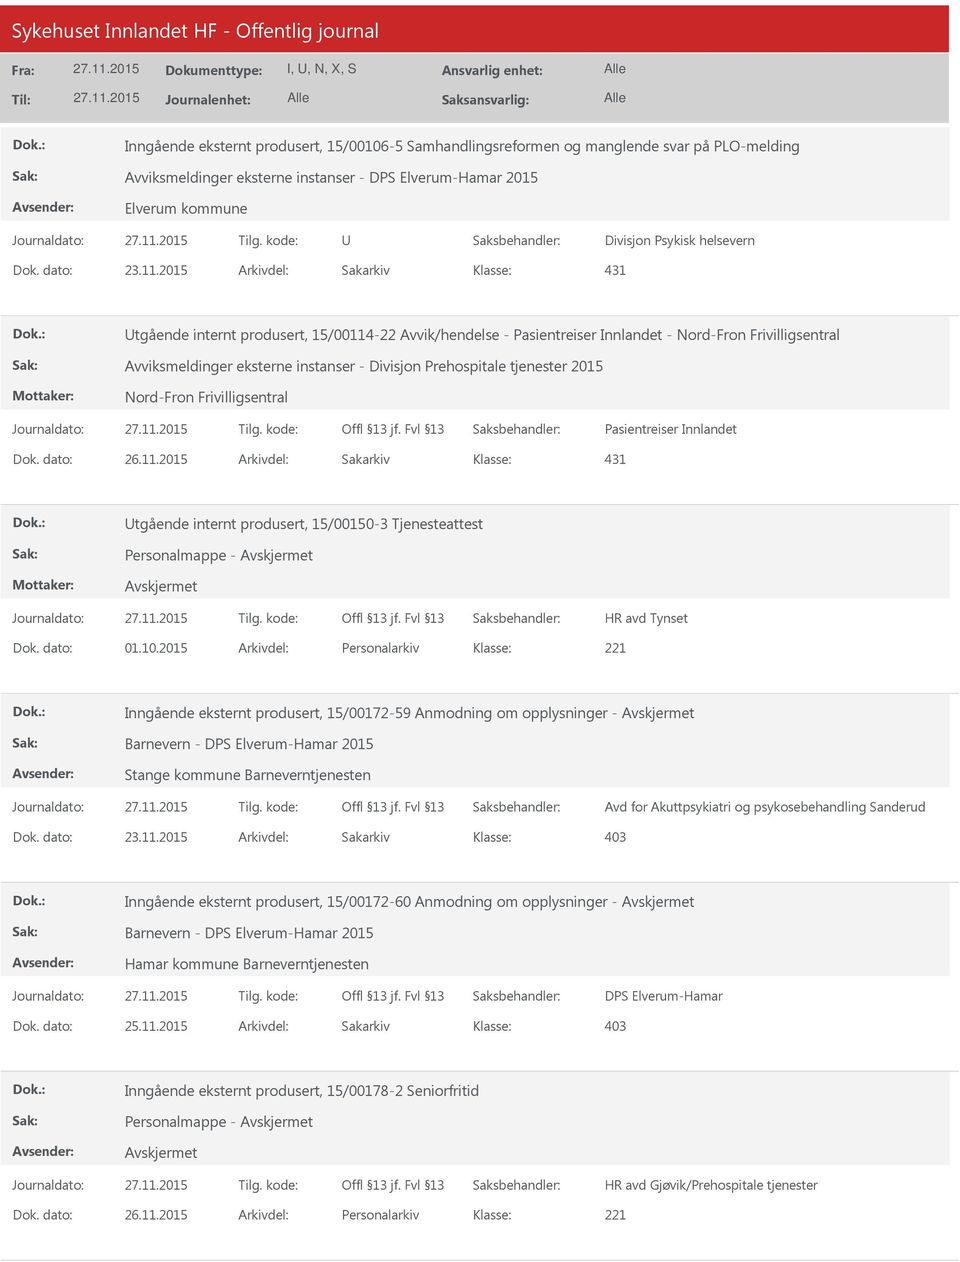 2015 Arkivdel: Sakarkiv 431 tgående internt produsert, 15/00114-22 Avvik/hendelse - Pasientreiser Innlandet - Nord-Fron Frivilligsentral Avviksmeldinger eksterne instanser - Divisjon Prehospitale